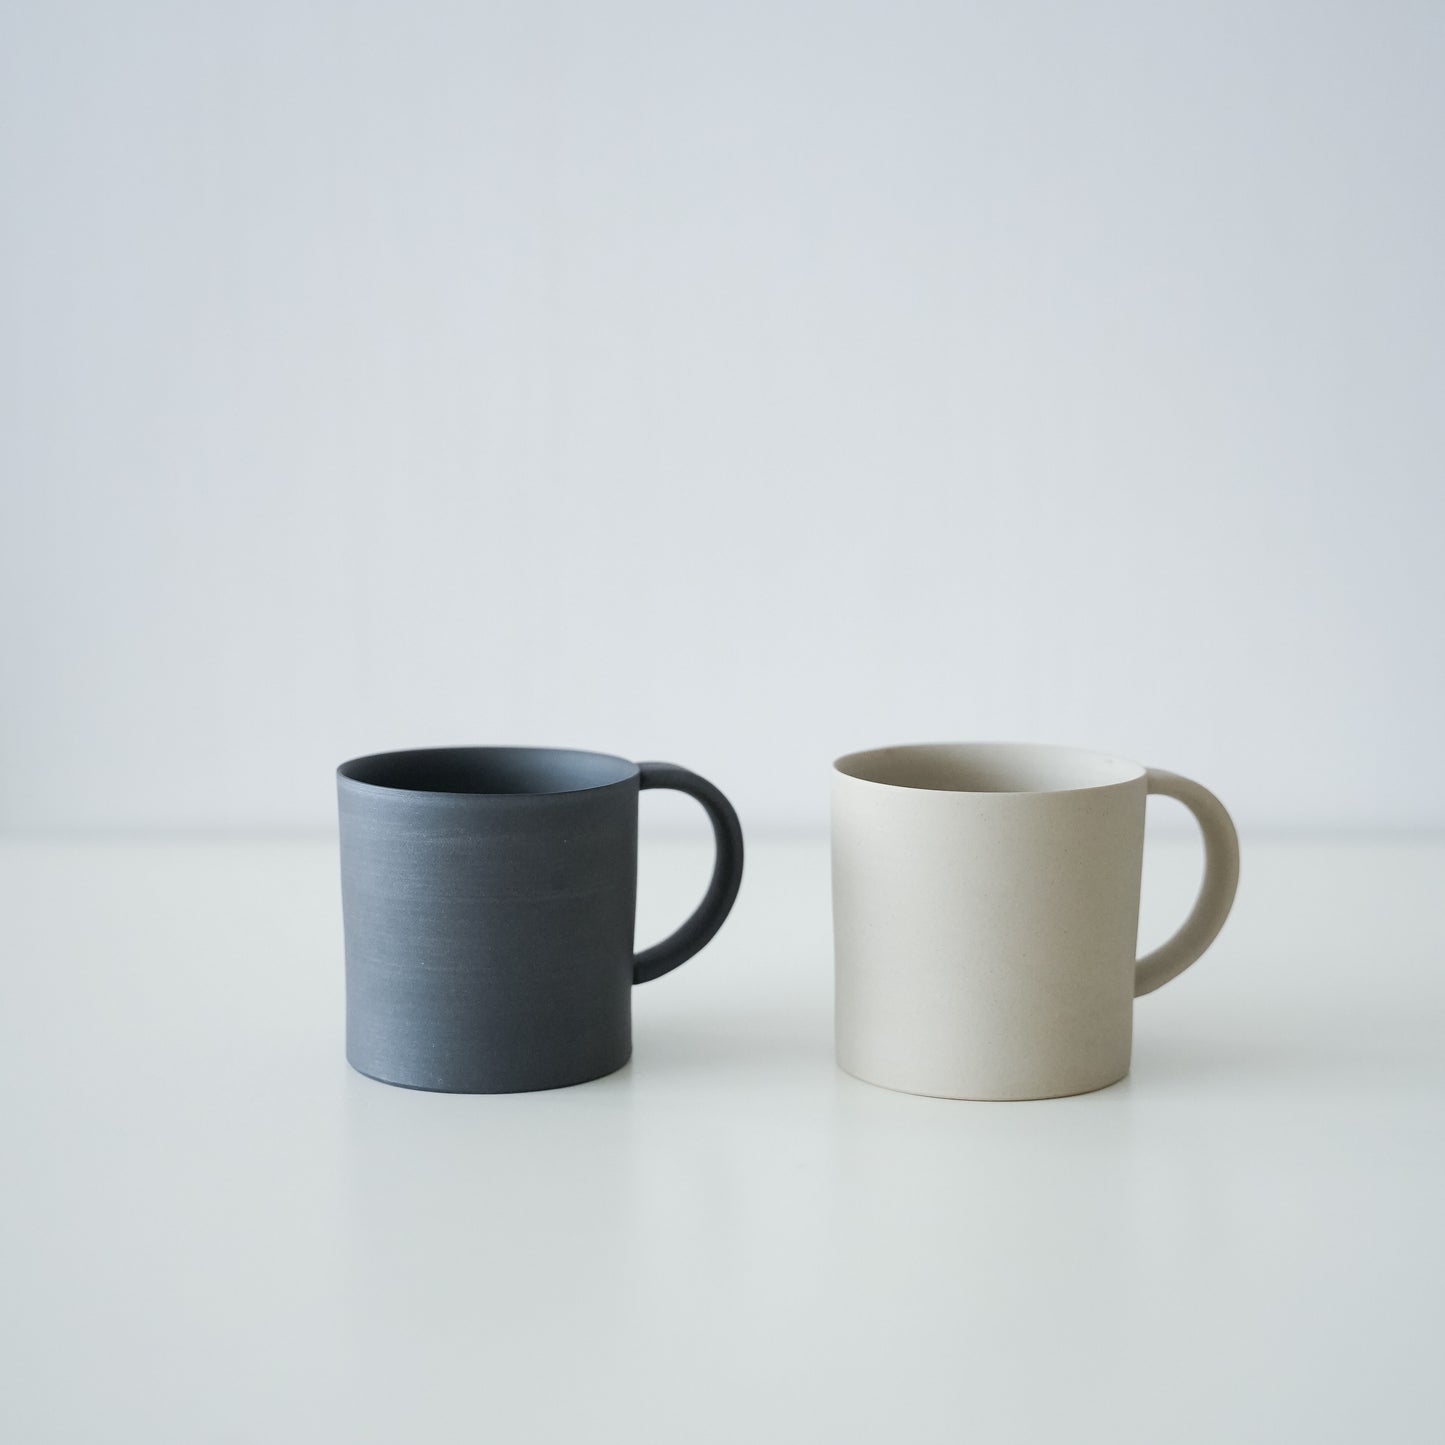 Coffee Mug - White